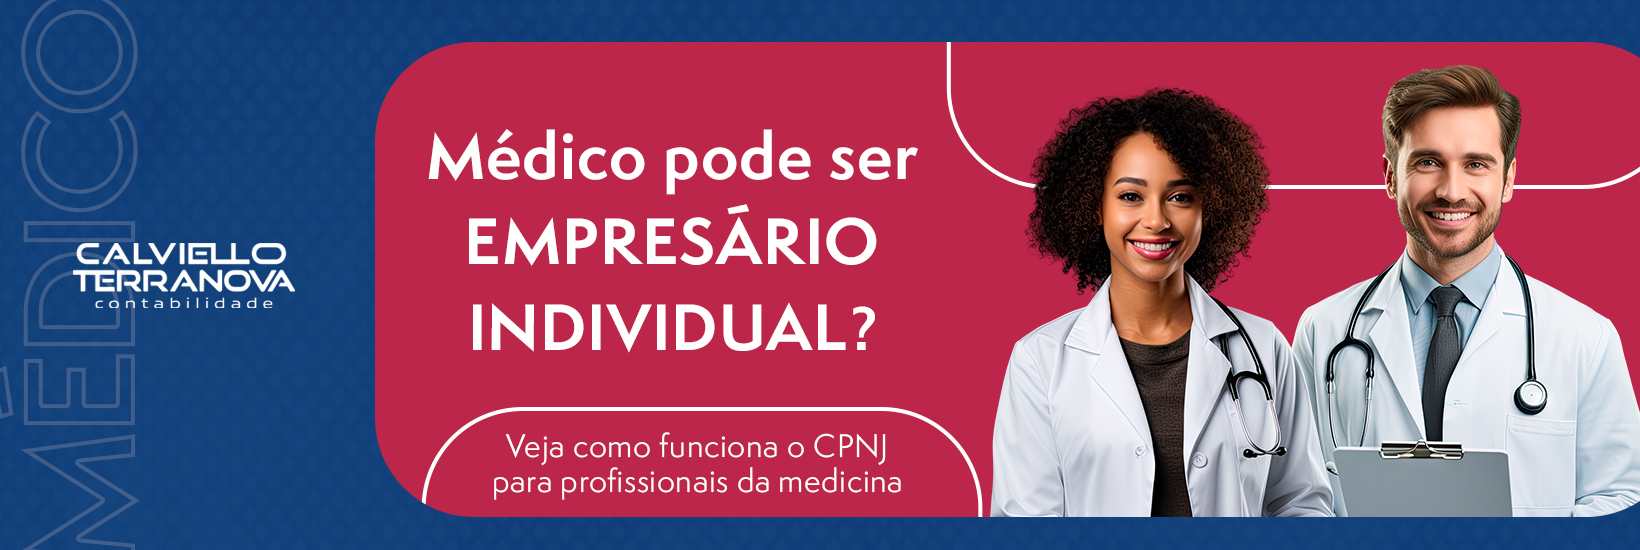 Médico pode ser Empresário Individual? Veja como funciona o CPNJ para profissionais da medicina